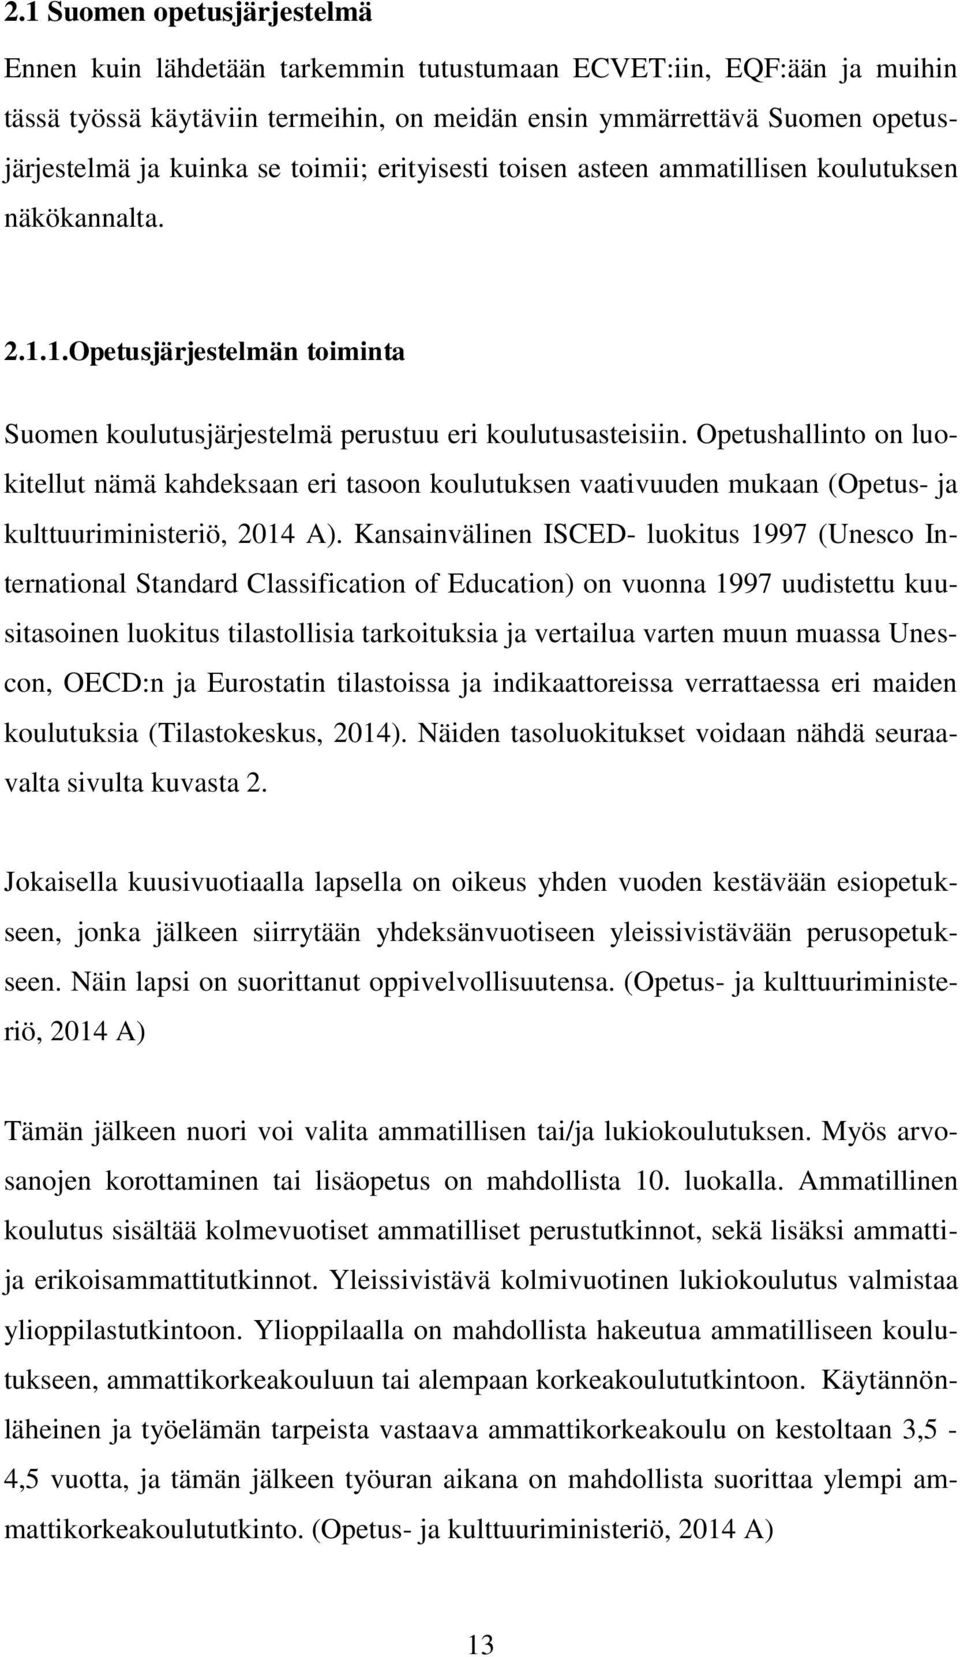 Opetushallinto on luokitellut nämä kahdeksaan eri tasoon koulutuksen vaativuuden mukaan (Opetus- ja kulttuuriministeriö, 2014 A).